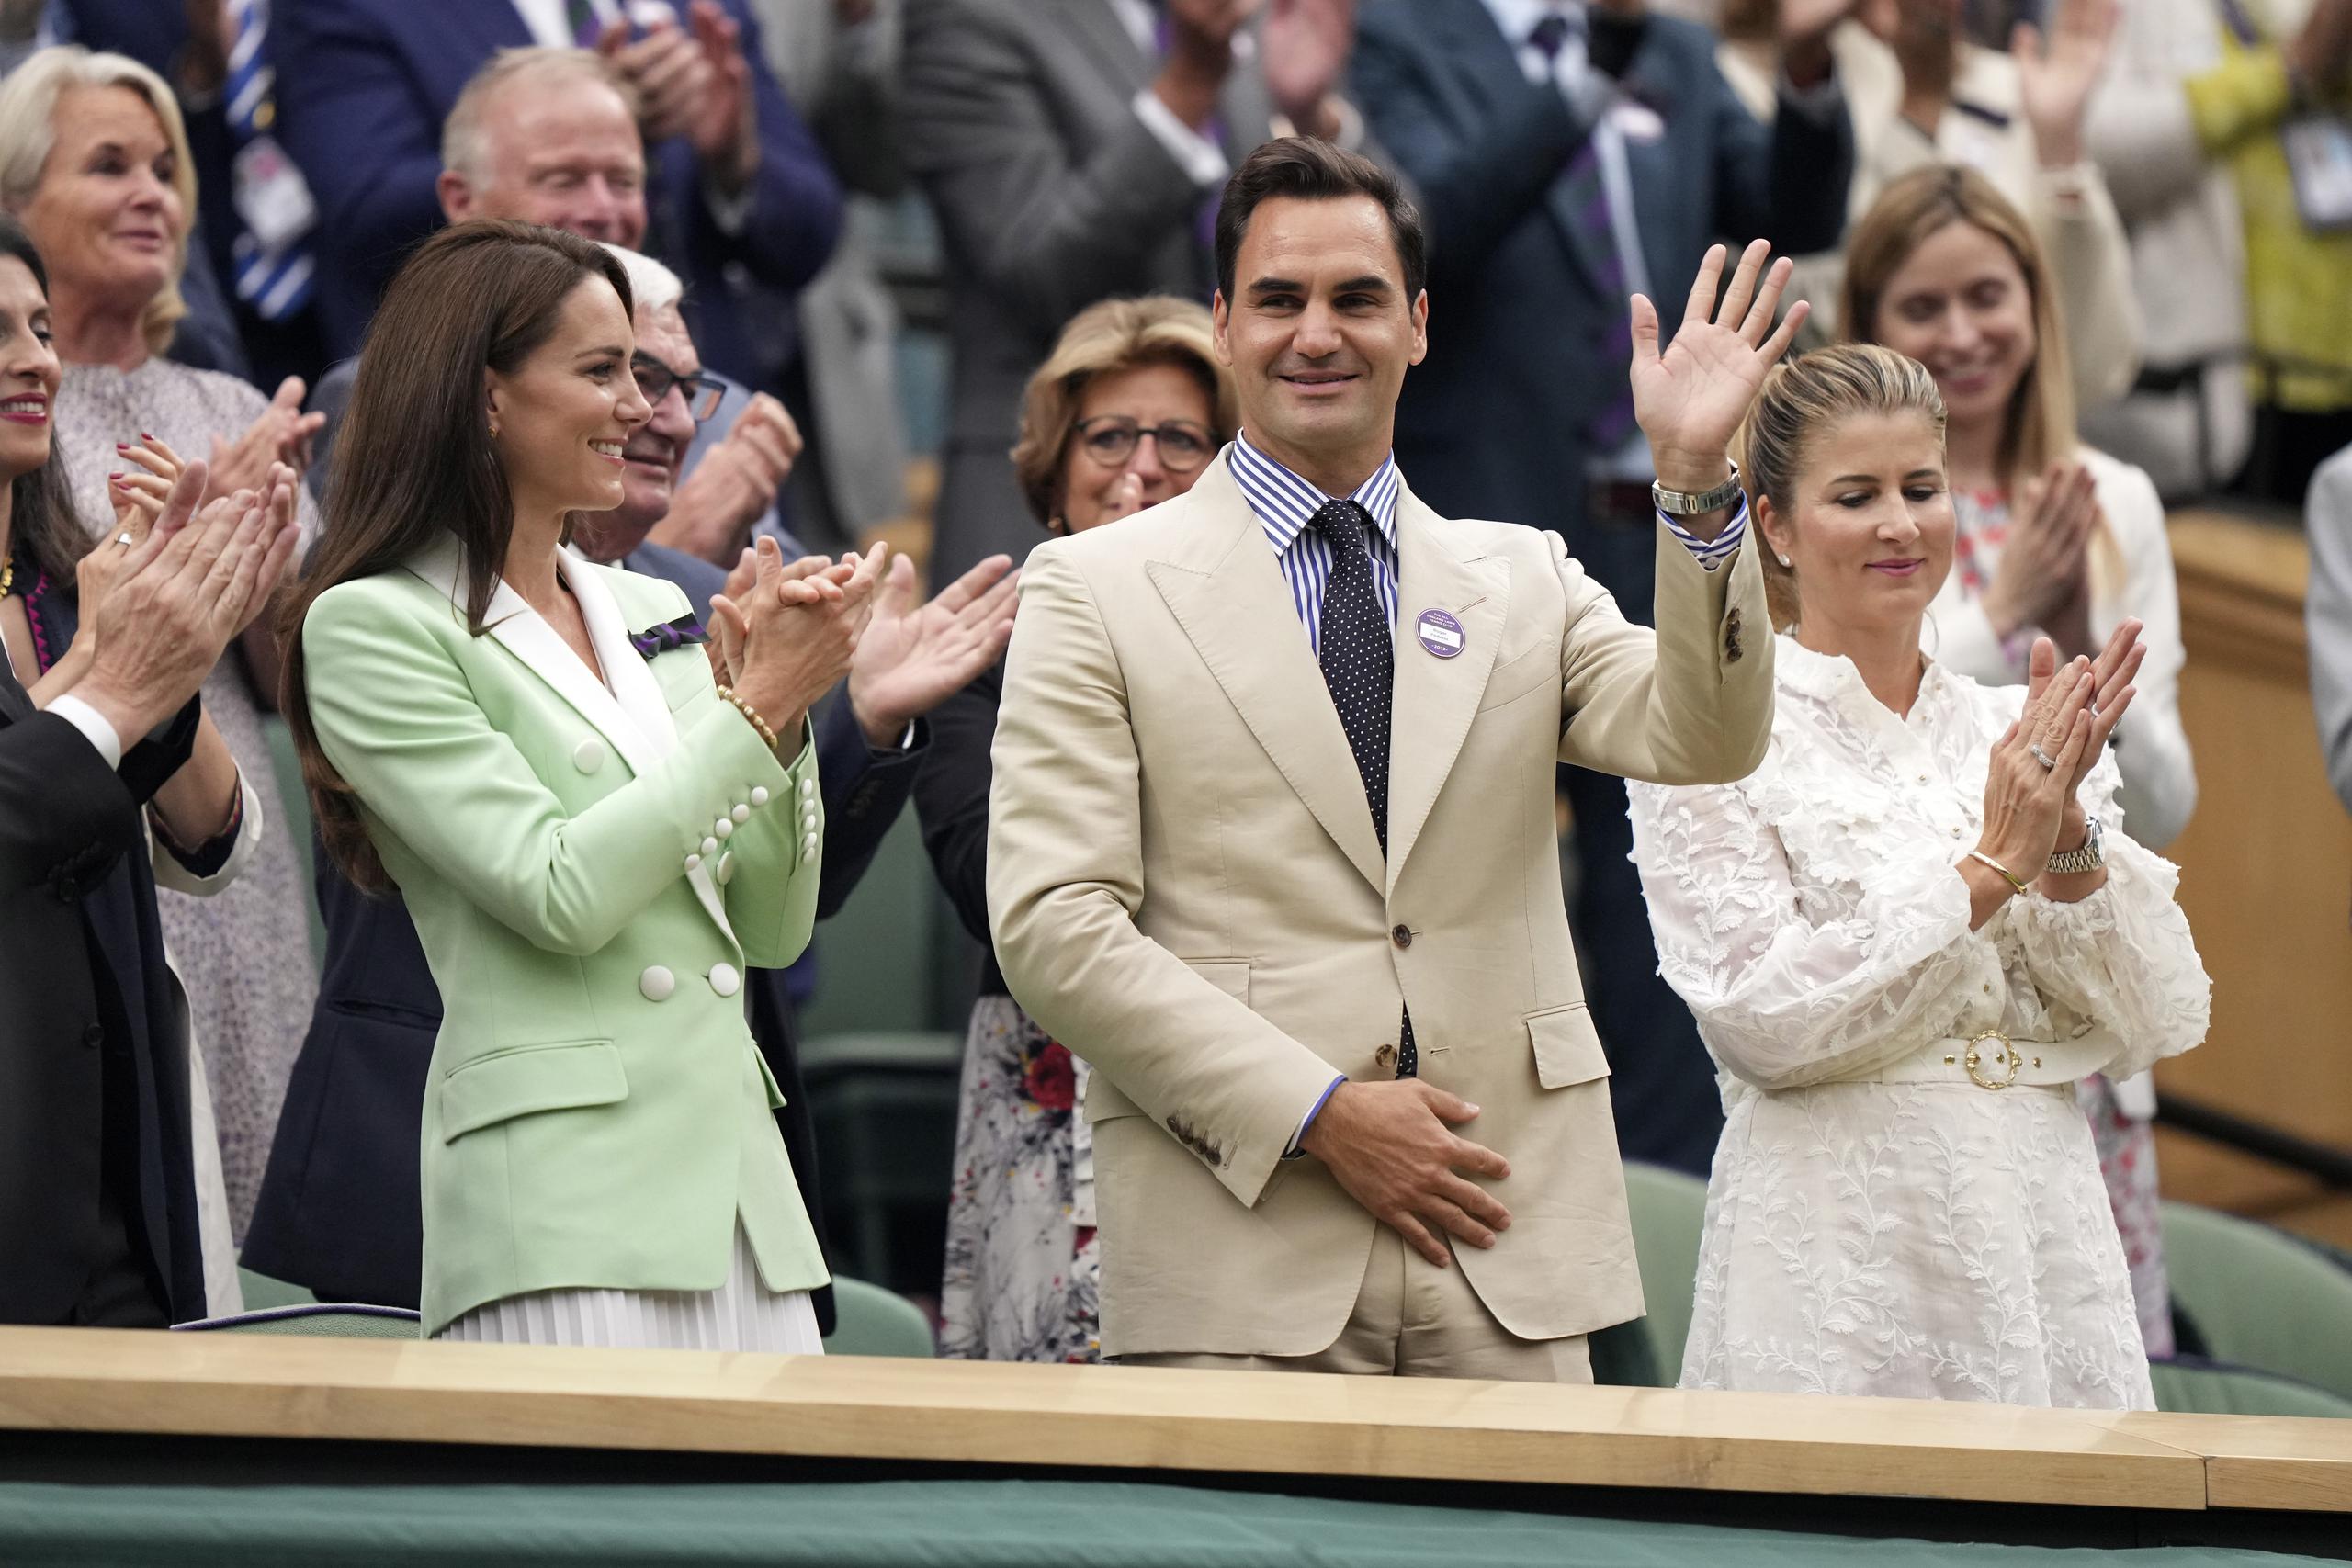 Roger Federer en el Palco Real junto a la princesa Catalina en la Cancha Central del torneo de Wimbledon.